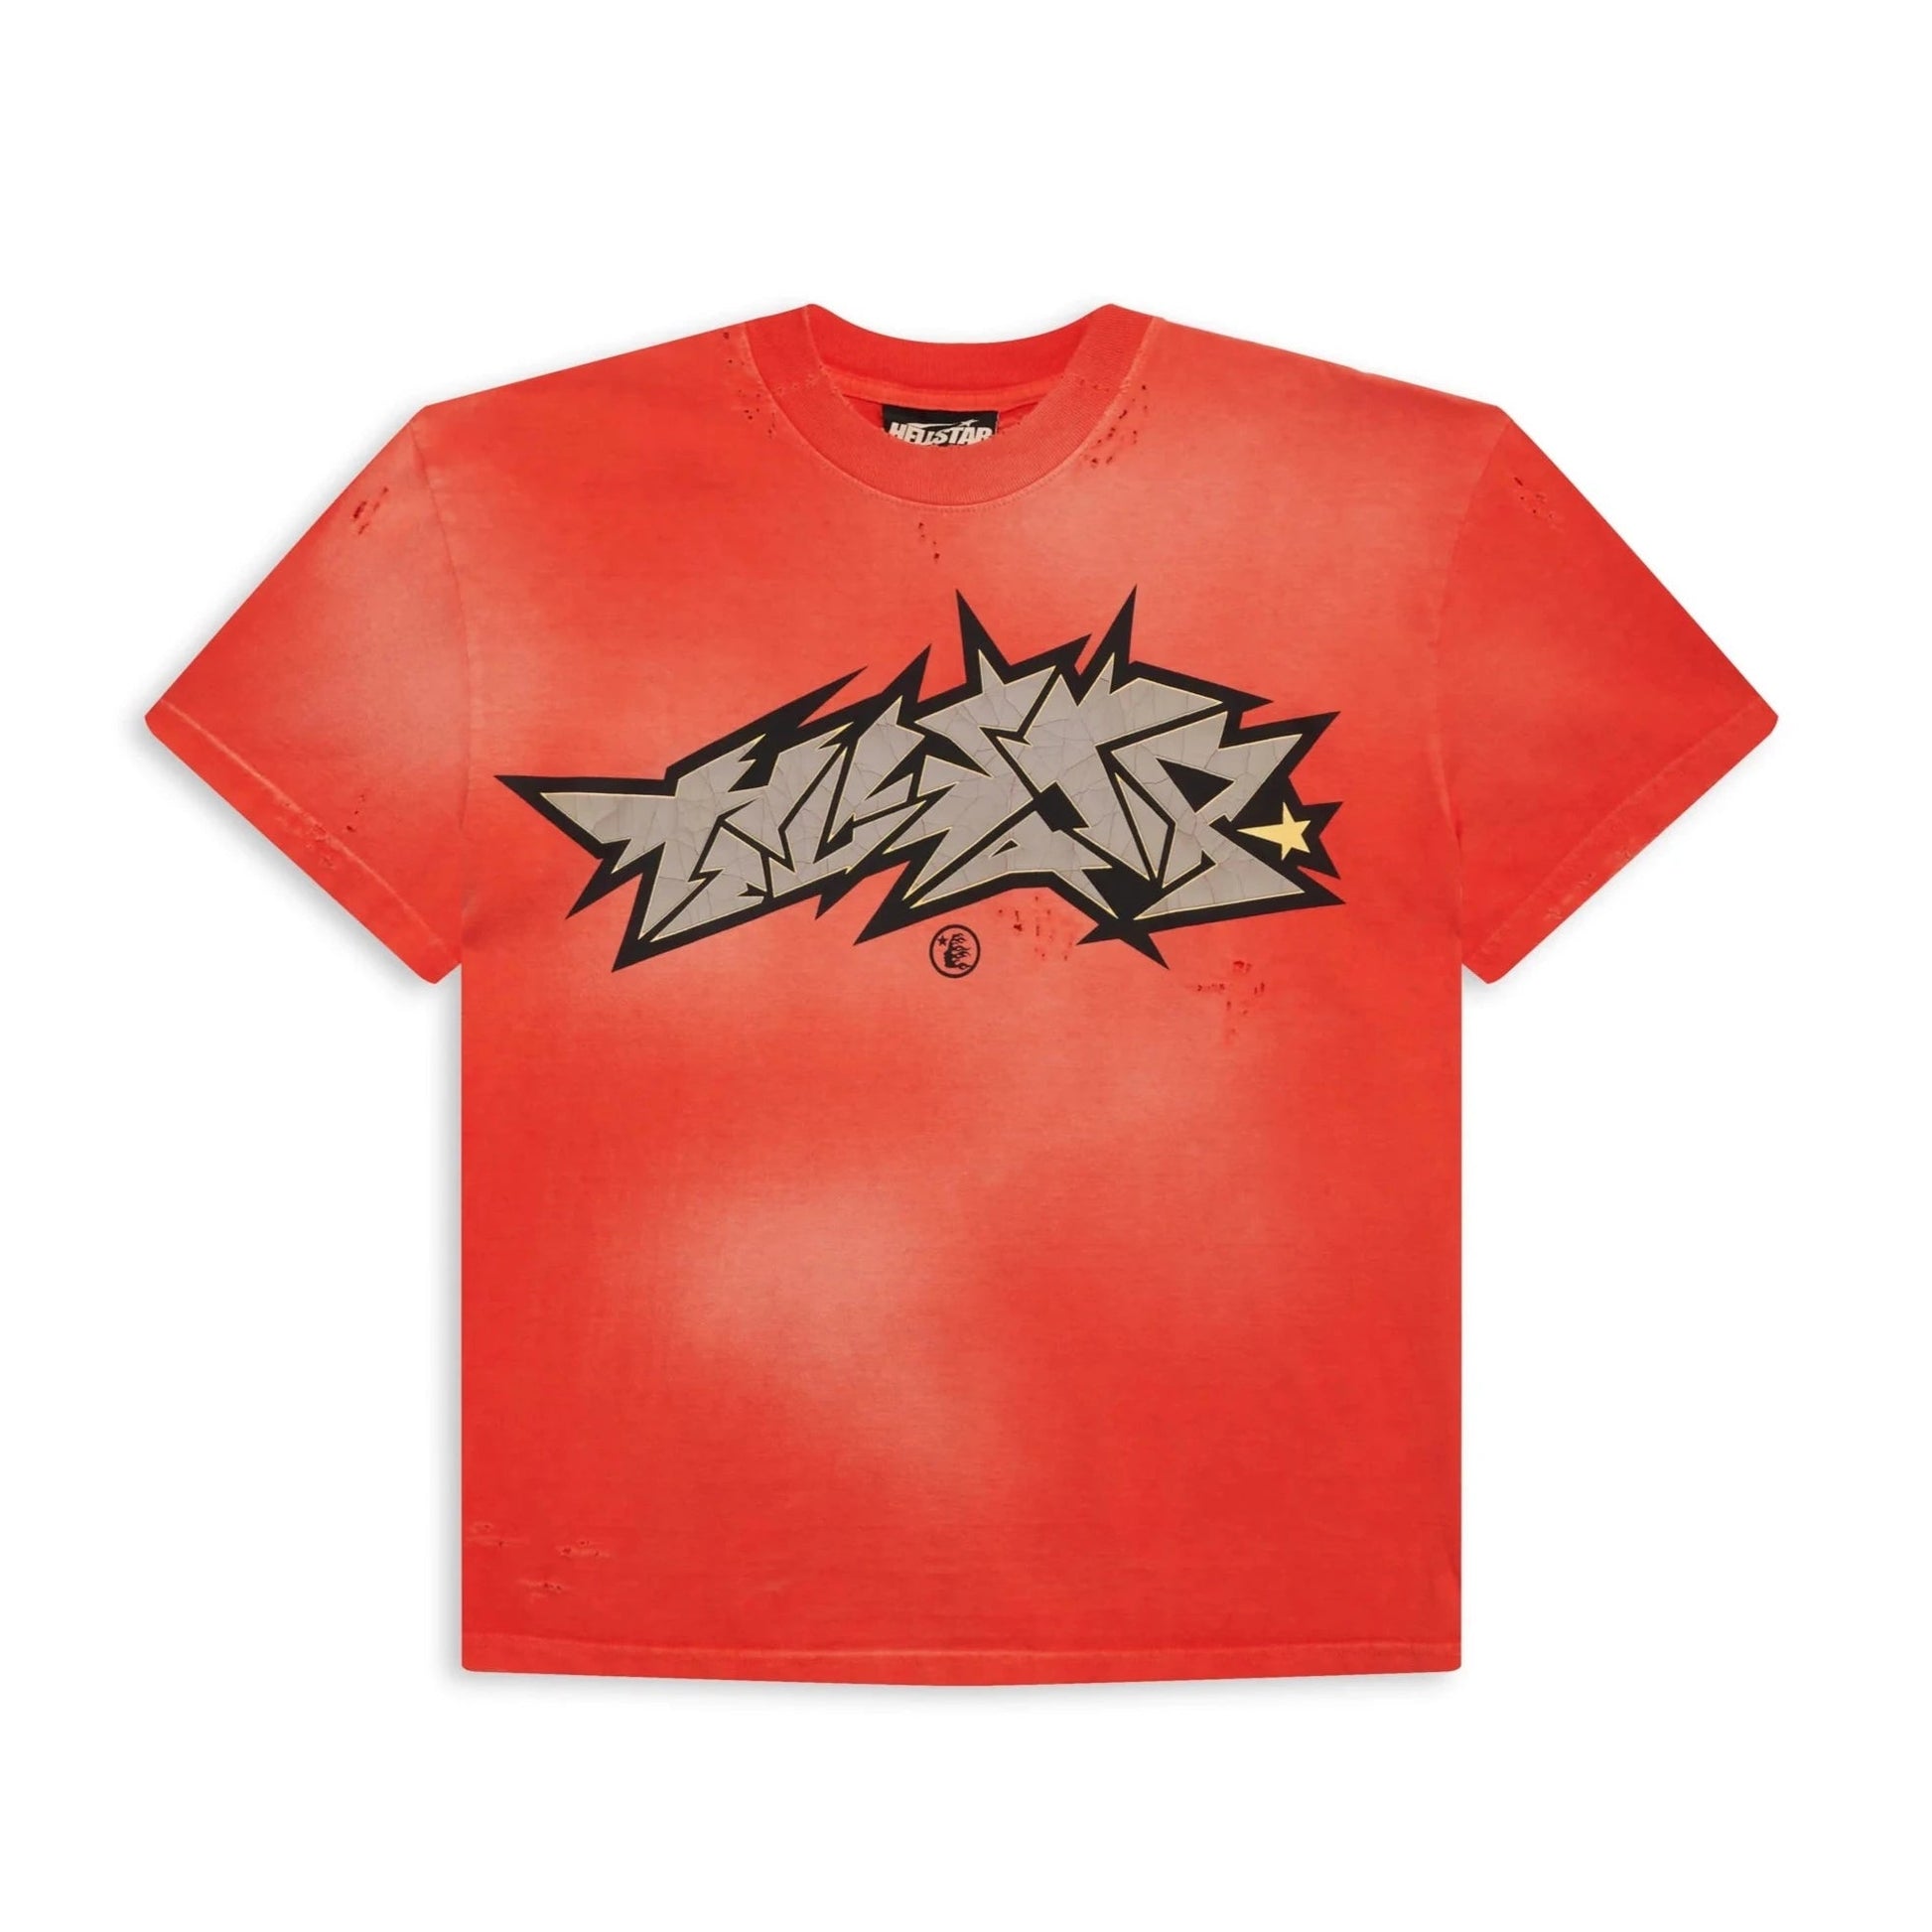 Hellstar Sports Red Crack Print T-Shirt - Sneakersbe Sneakers Sale Online